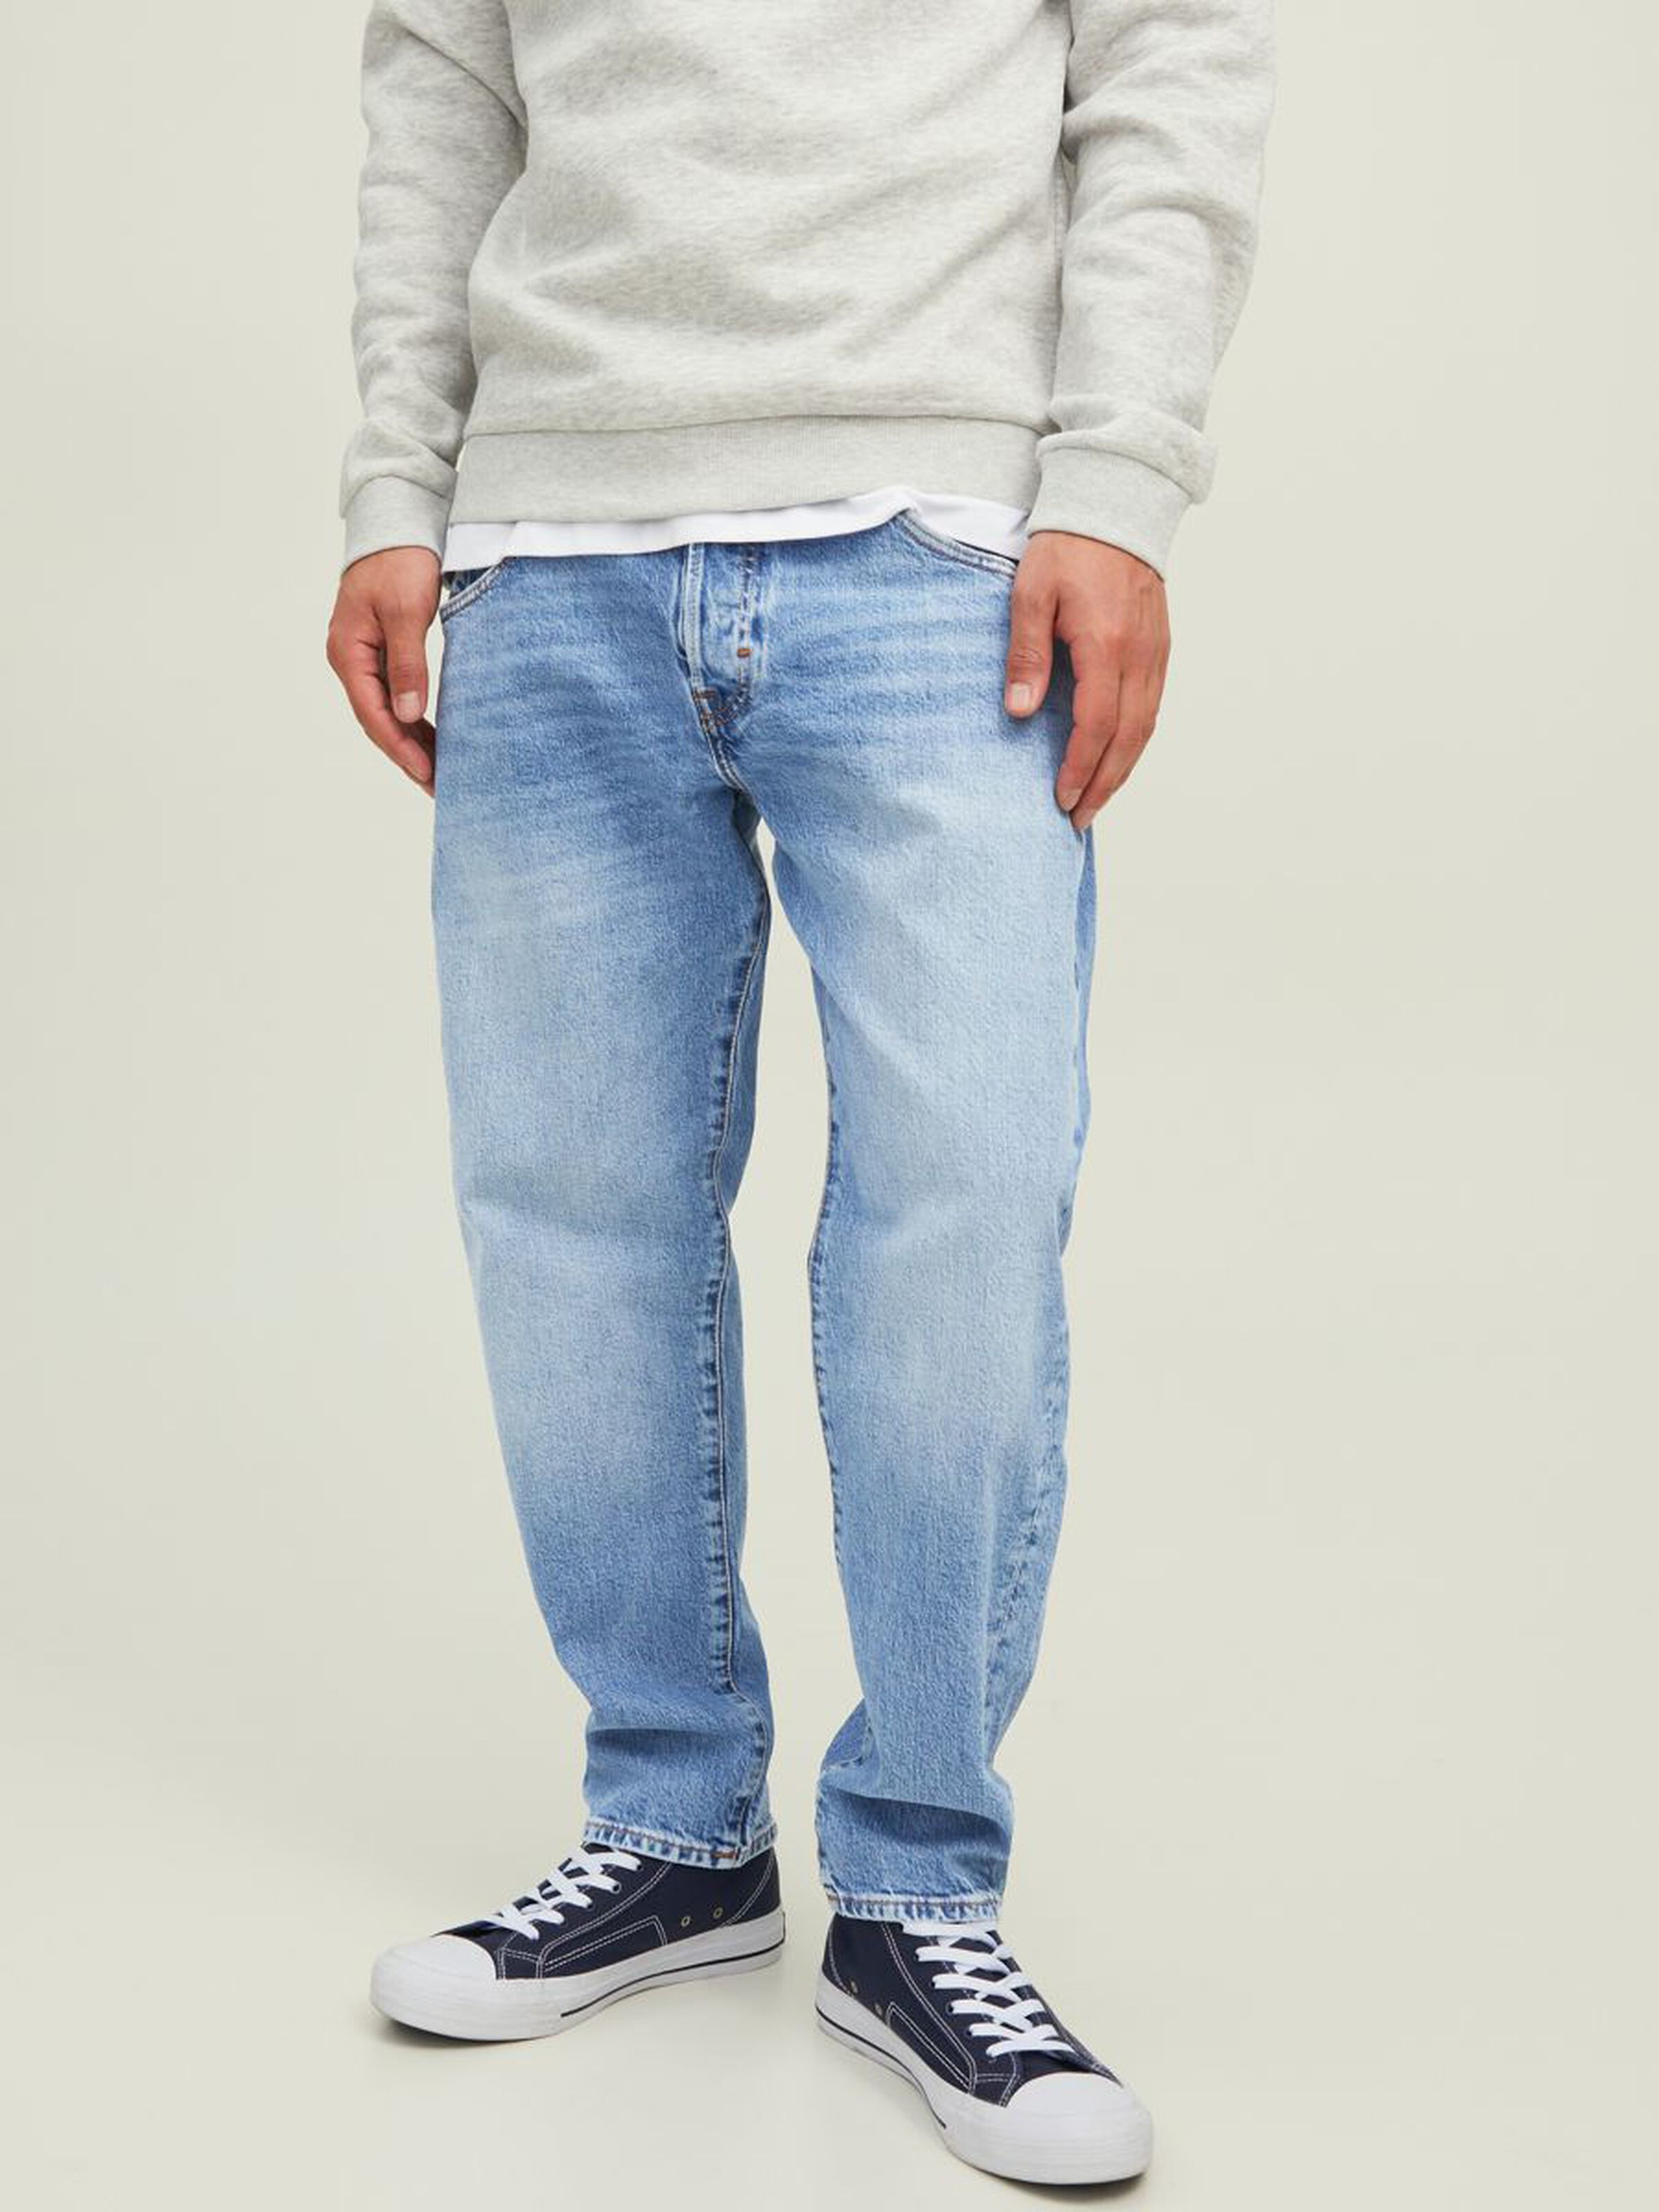 Frank leen cj 715 tapered fit jeans - blue/blue denim